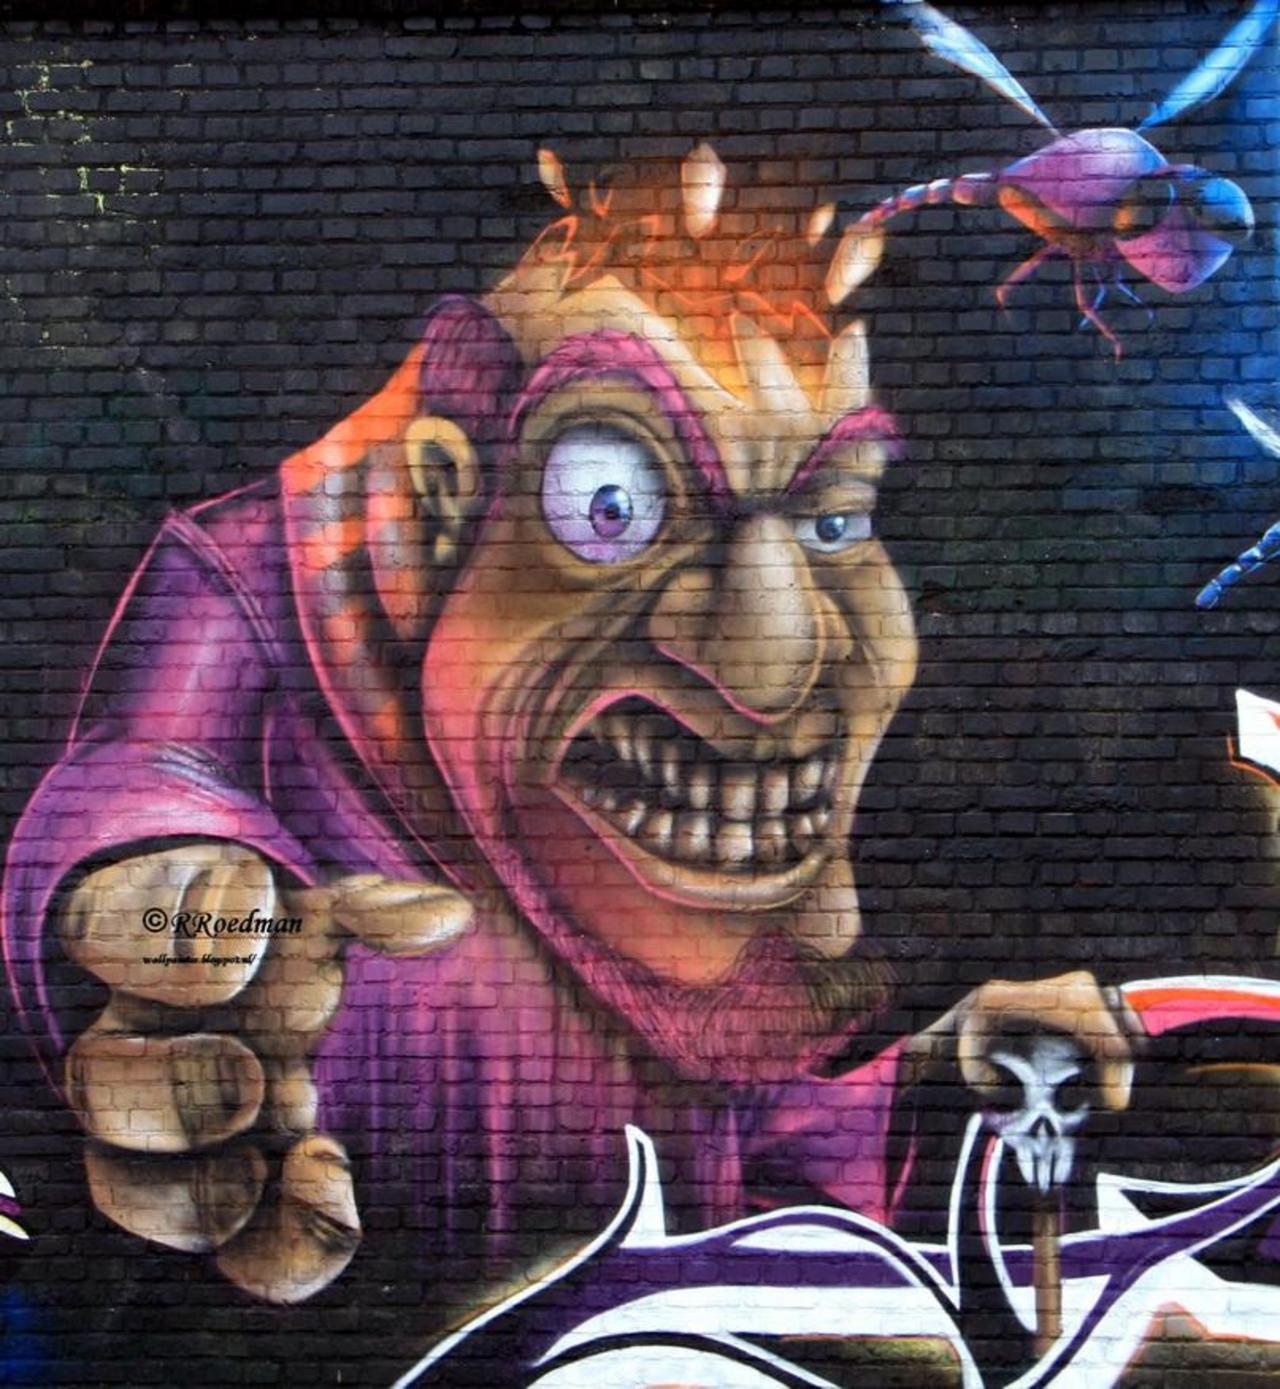 RT @RRoedman: #streetart #graffiti #mural Meeting of styles #Berchem #Antwerpen,2 pics at http://wallpaintss.blogspot.nl http://t.co/XoI1n0tzUz